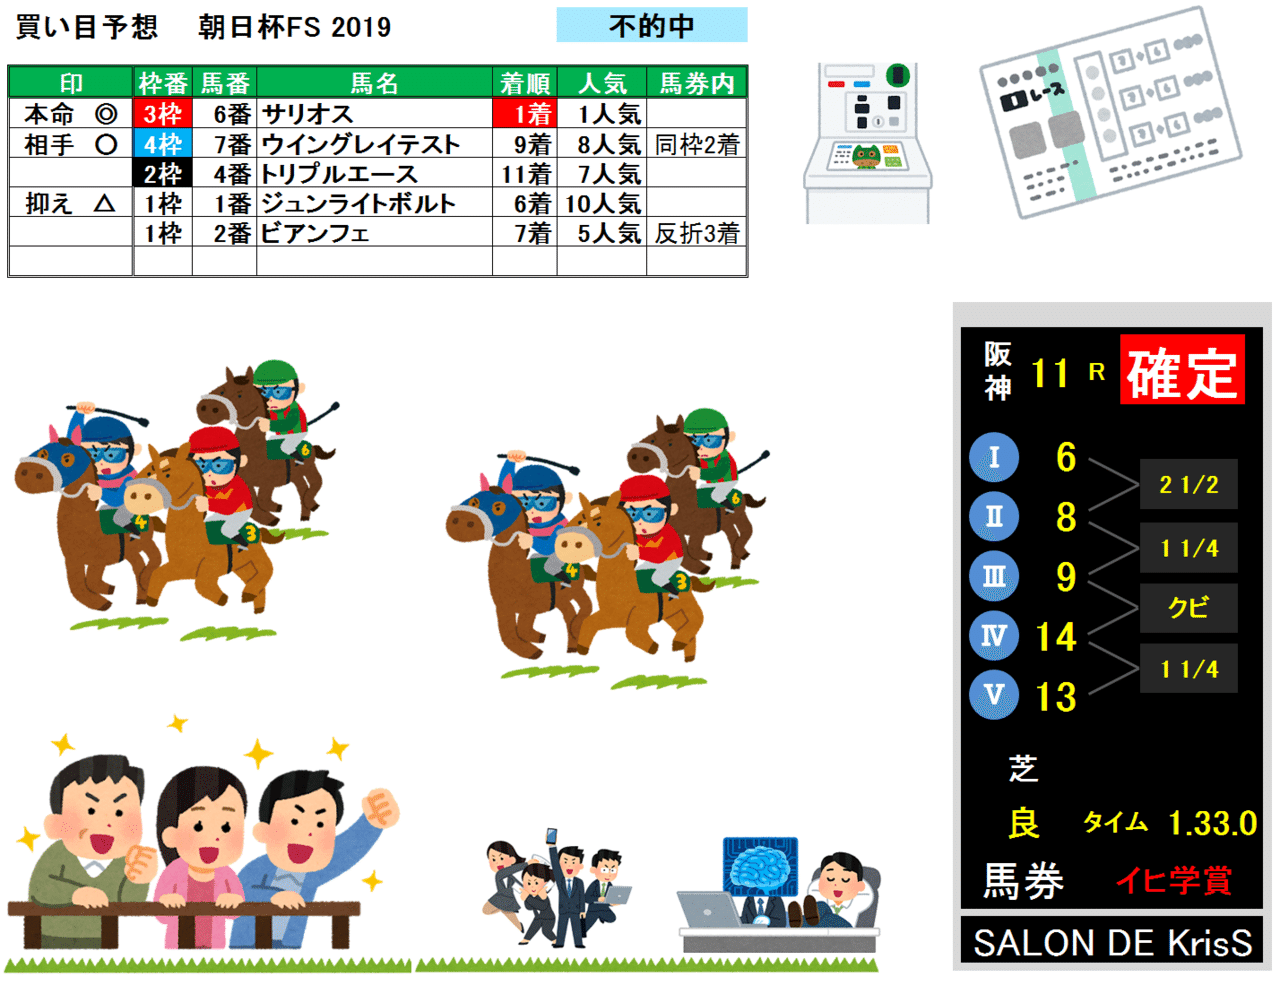 朝日杯FS-result